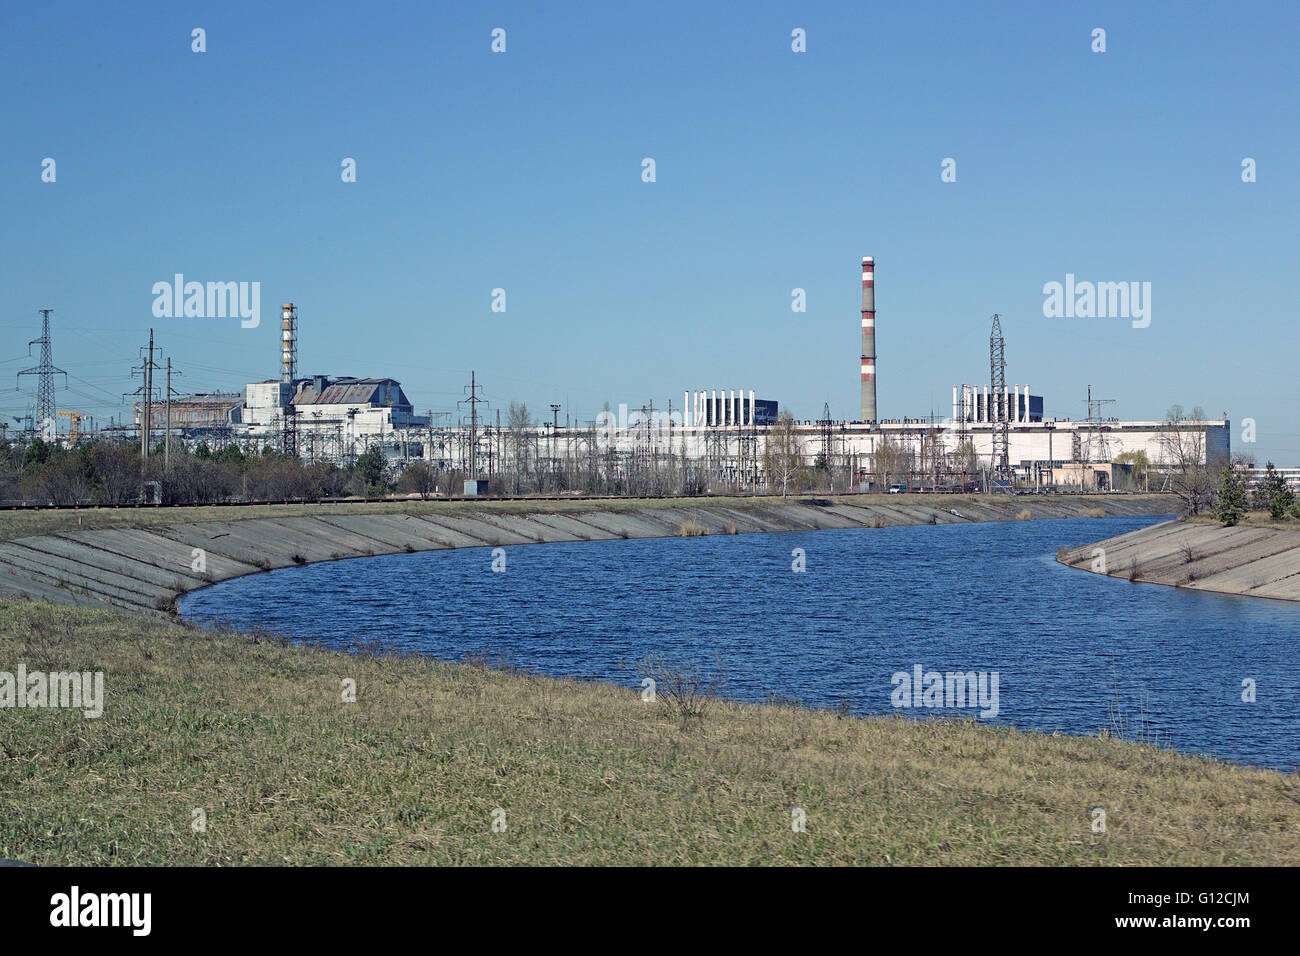 Fiume Pripjat, Chernobyl - impianto di energia nucleare - reattore 4, 3, 2 & 1 - (da sinistra a destra). Foto Stock